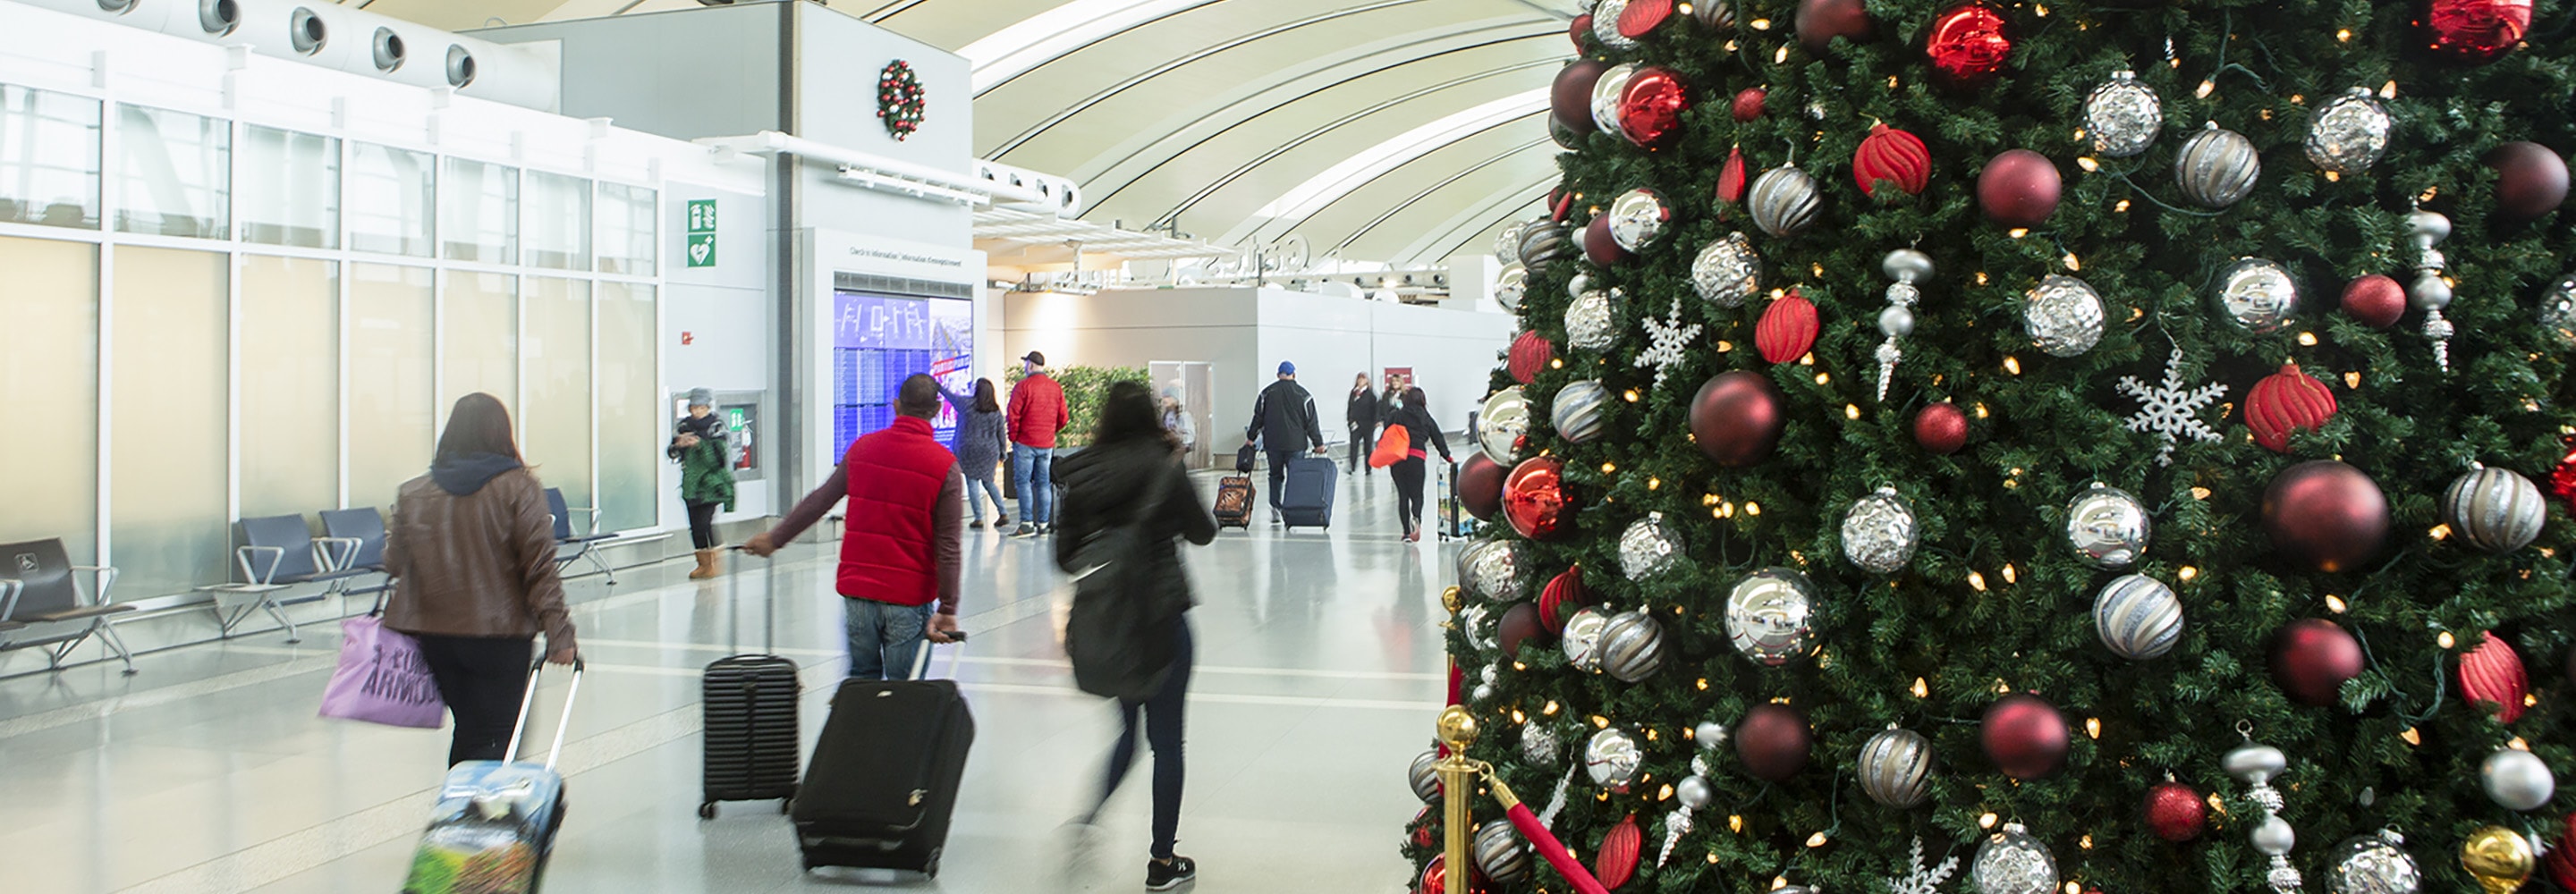 arbre de noël et passagers marchant avec des bagages dans le terminal